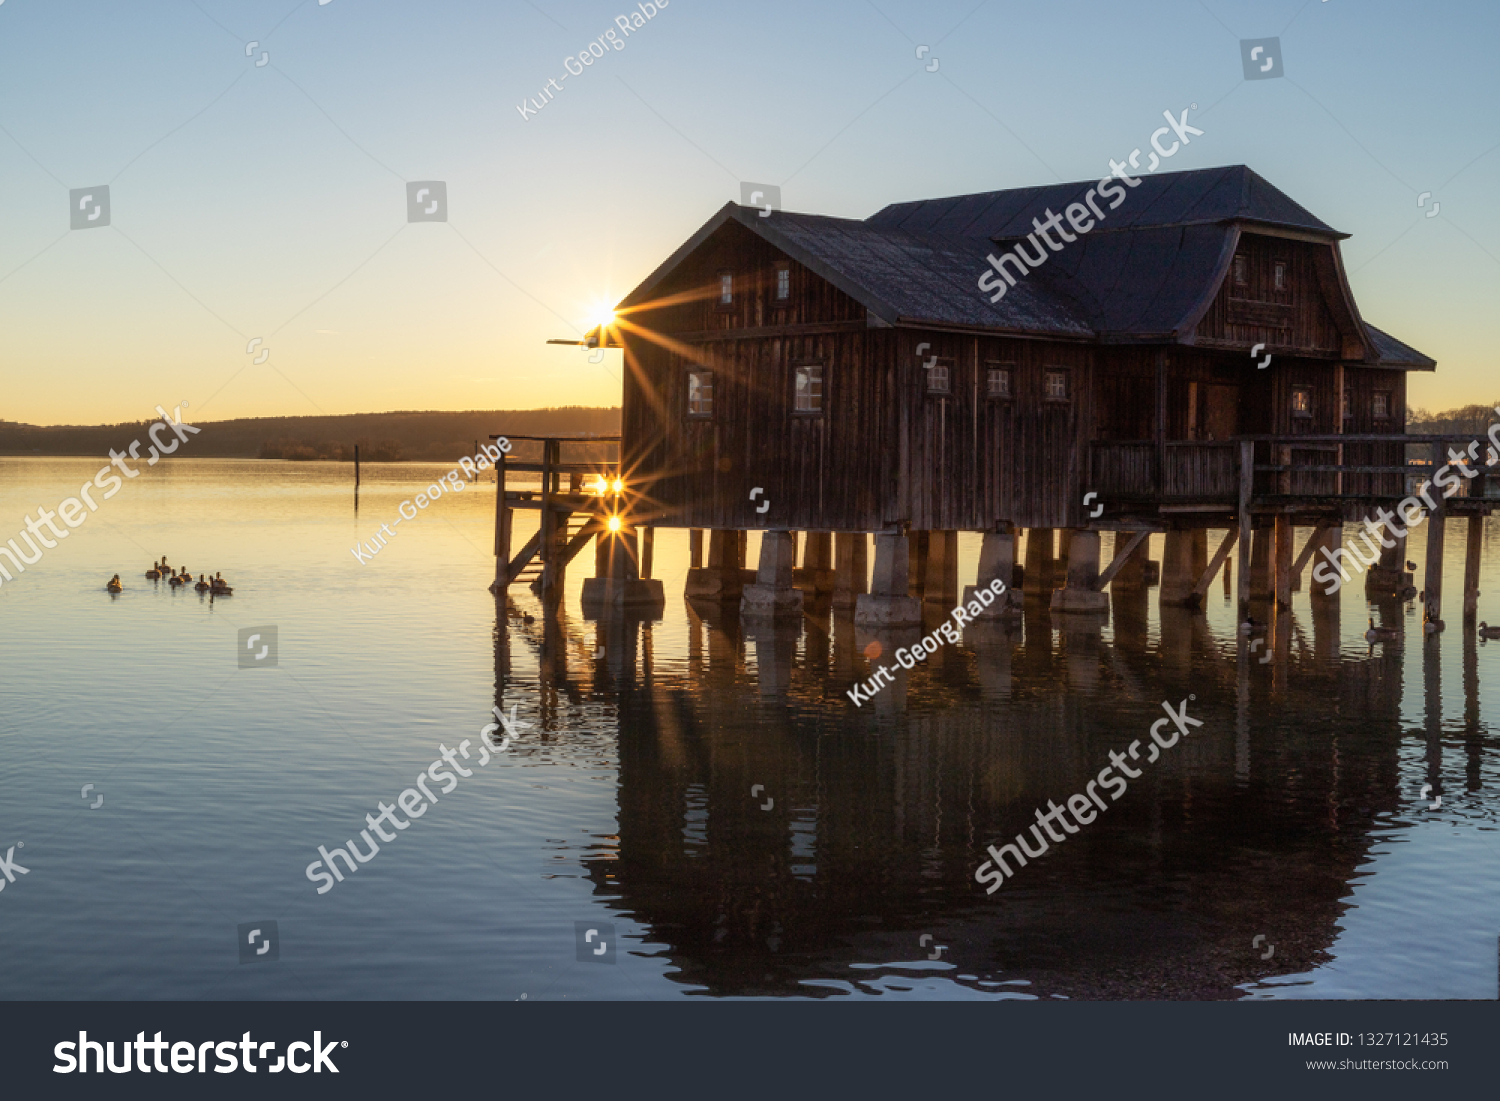 A boatshouse at a lake at sunset #1327121435